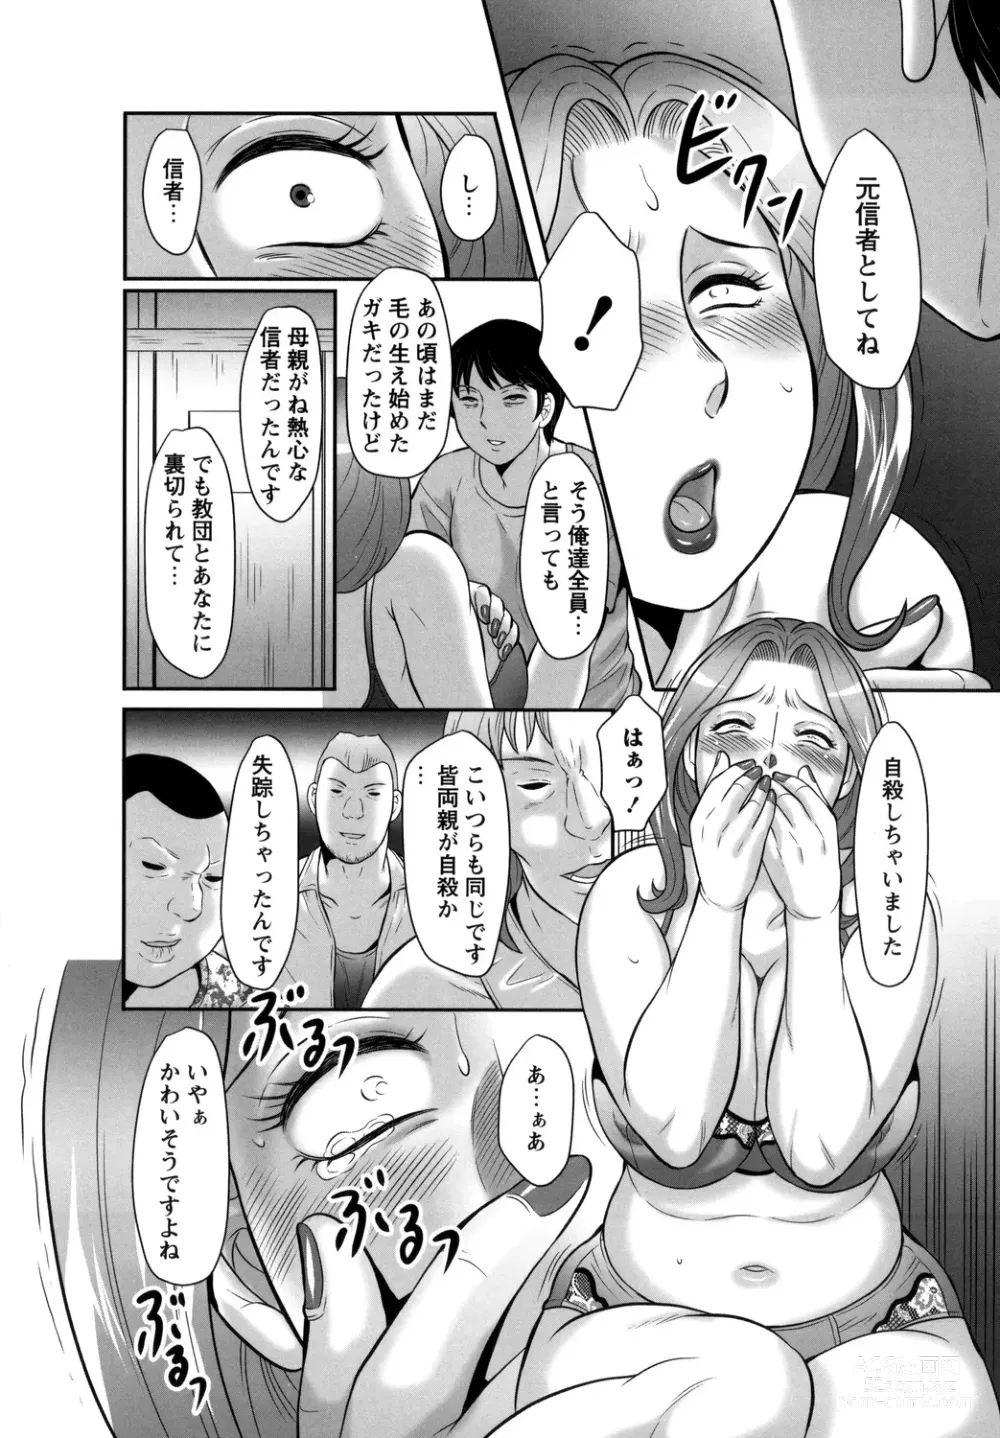 Page 14 of manga Midaragami Seinaru Jukujo ga Mesubuta Ika no Nanika ni Ochiru made